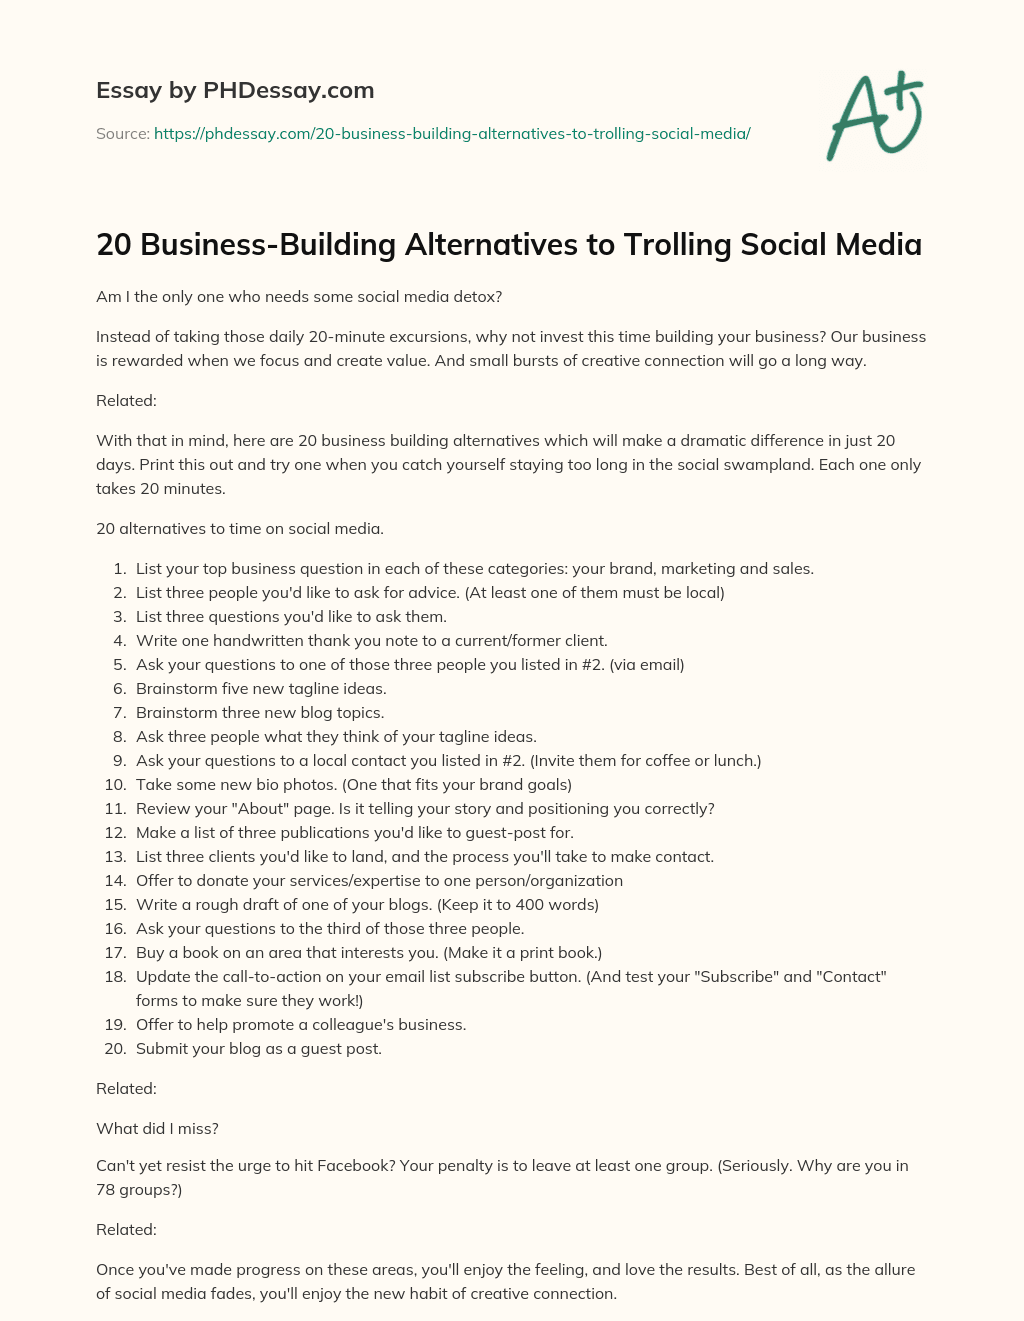 20 Business-Building Alternatives to Trolling Social Media essay